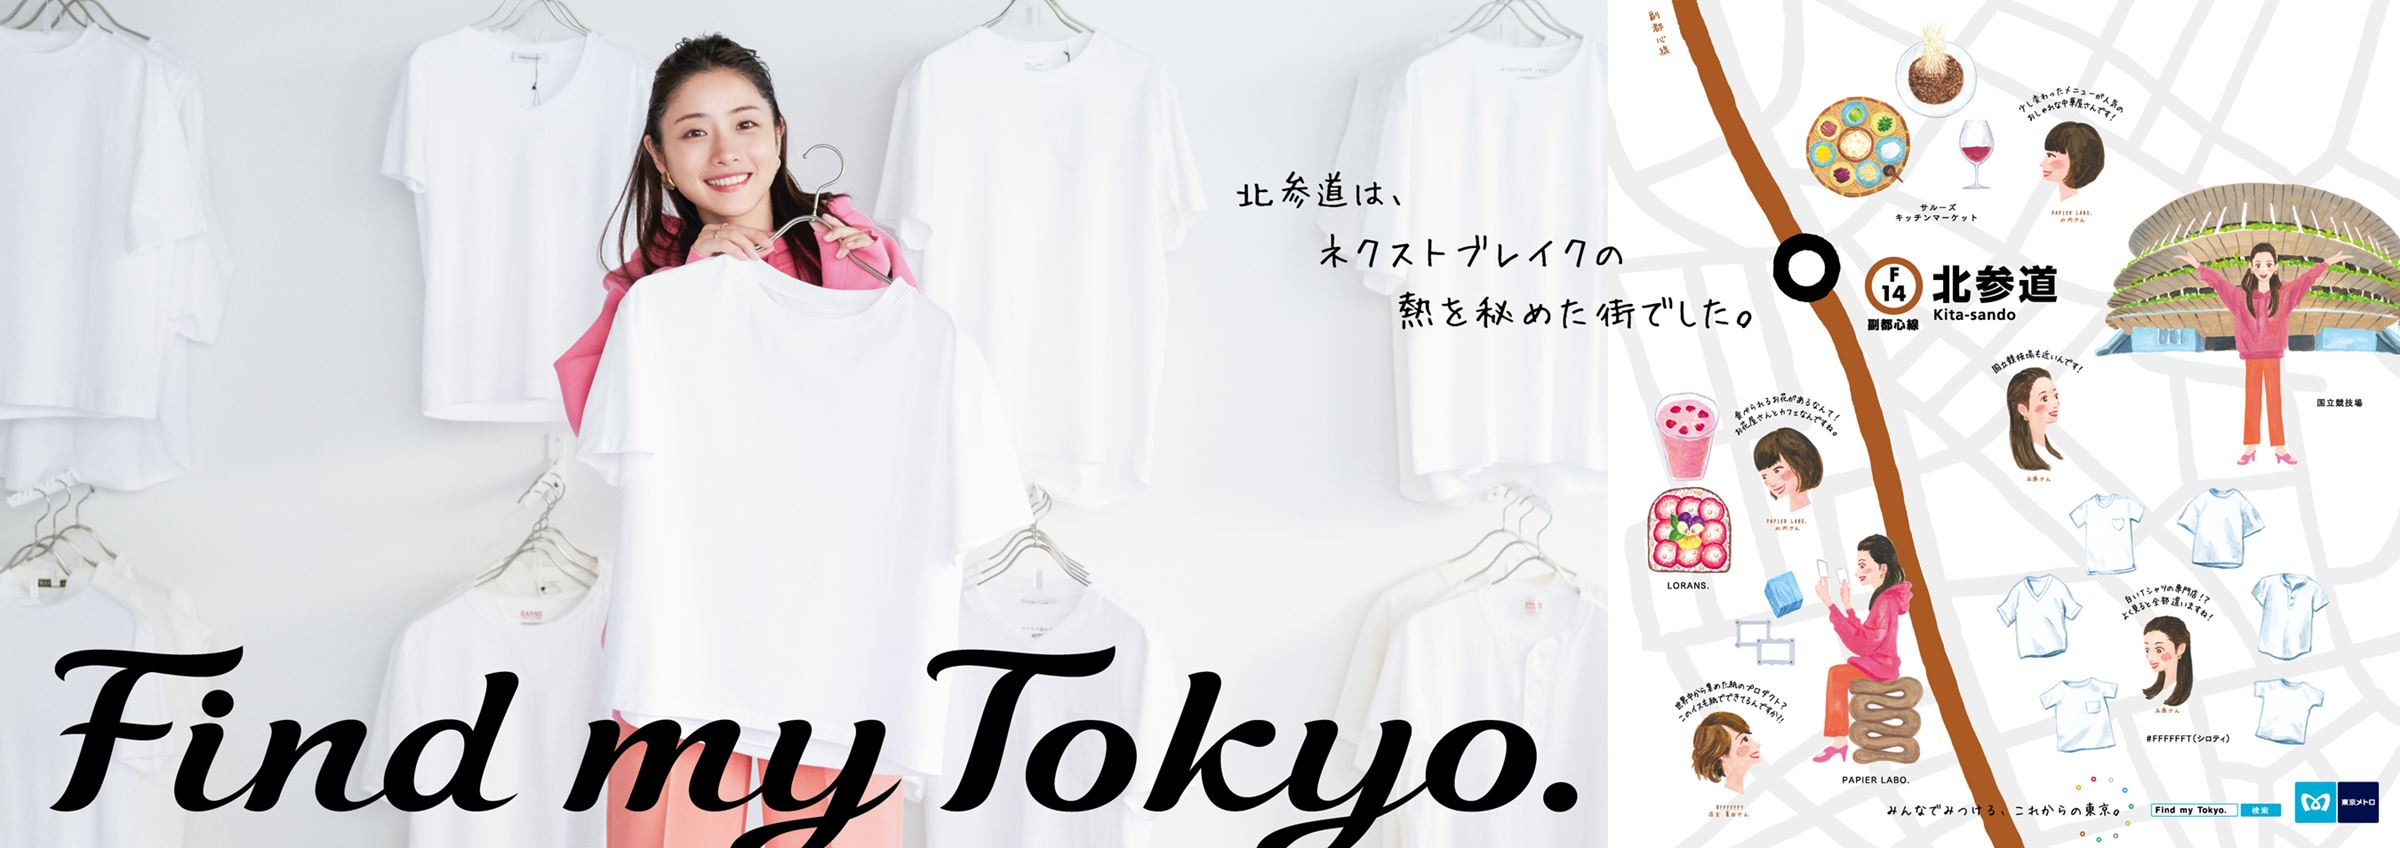 東京メトロ「Find my Tokyo.」キャンペーンビジュアル